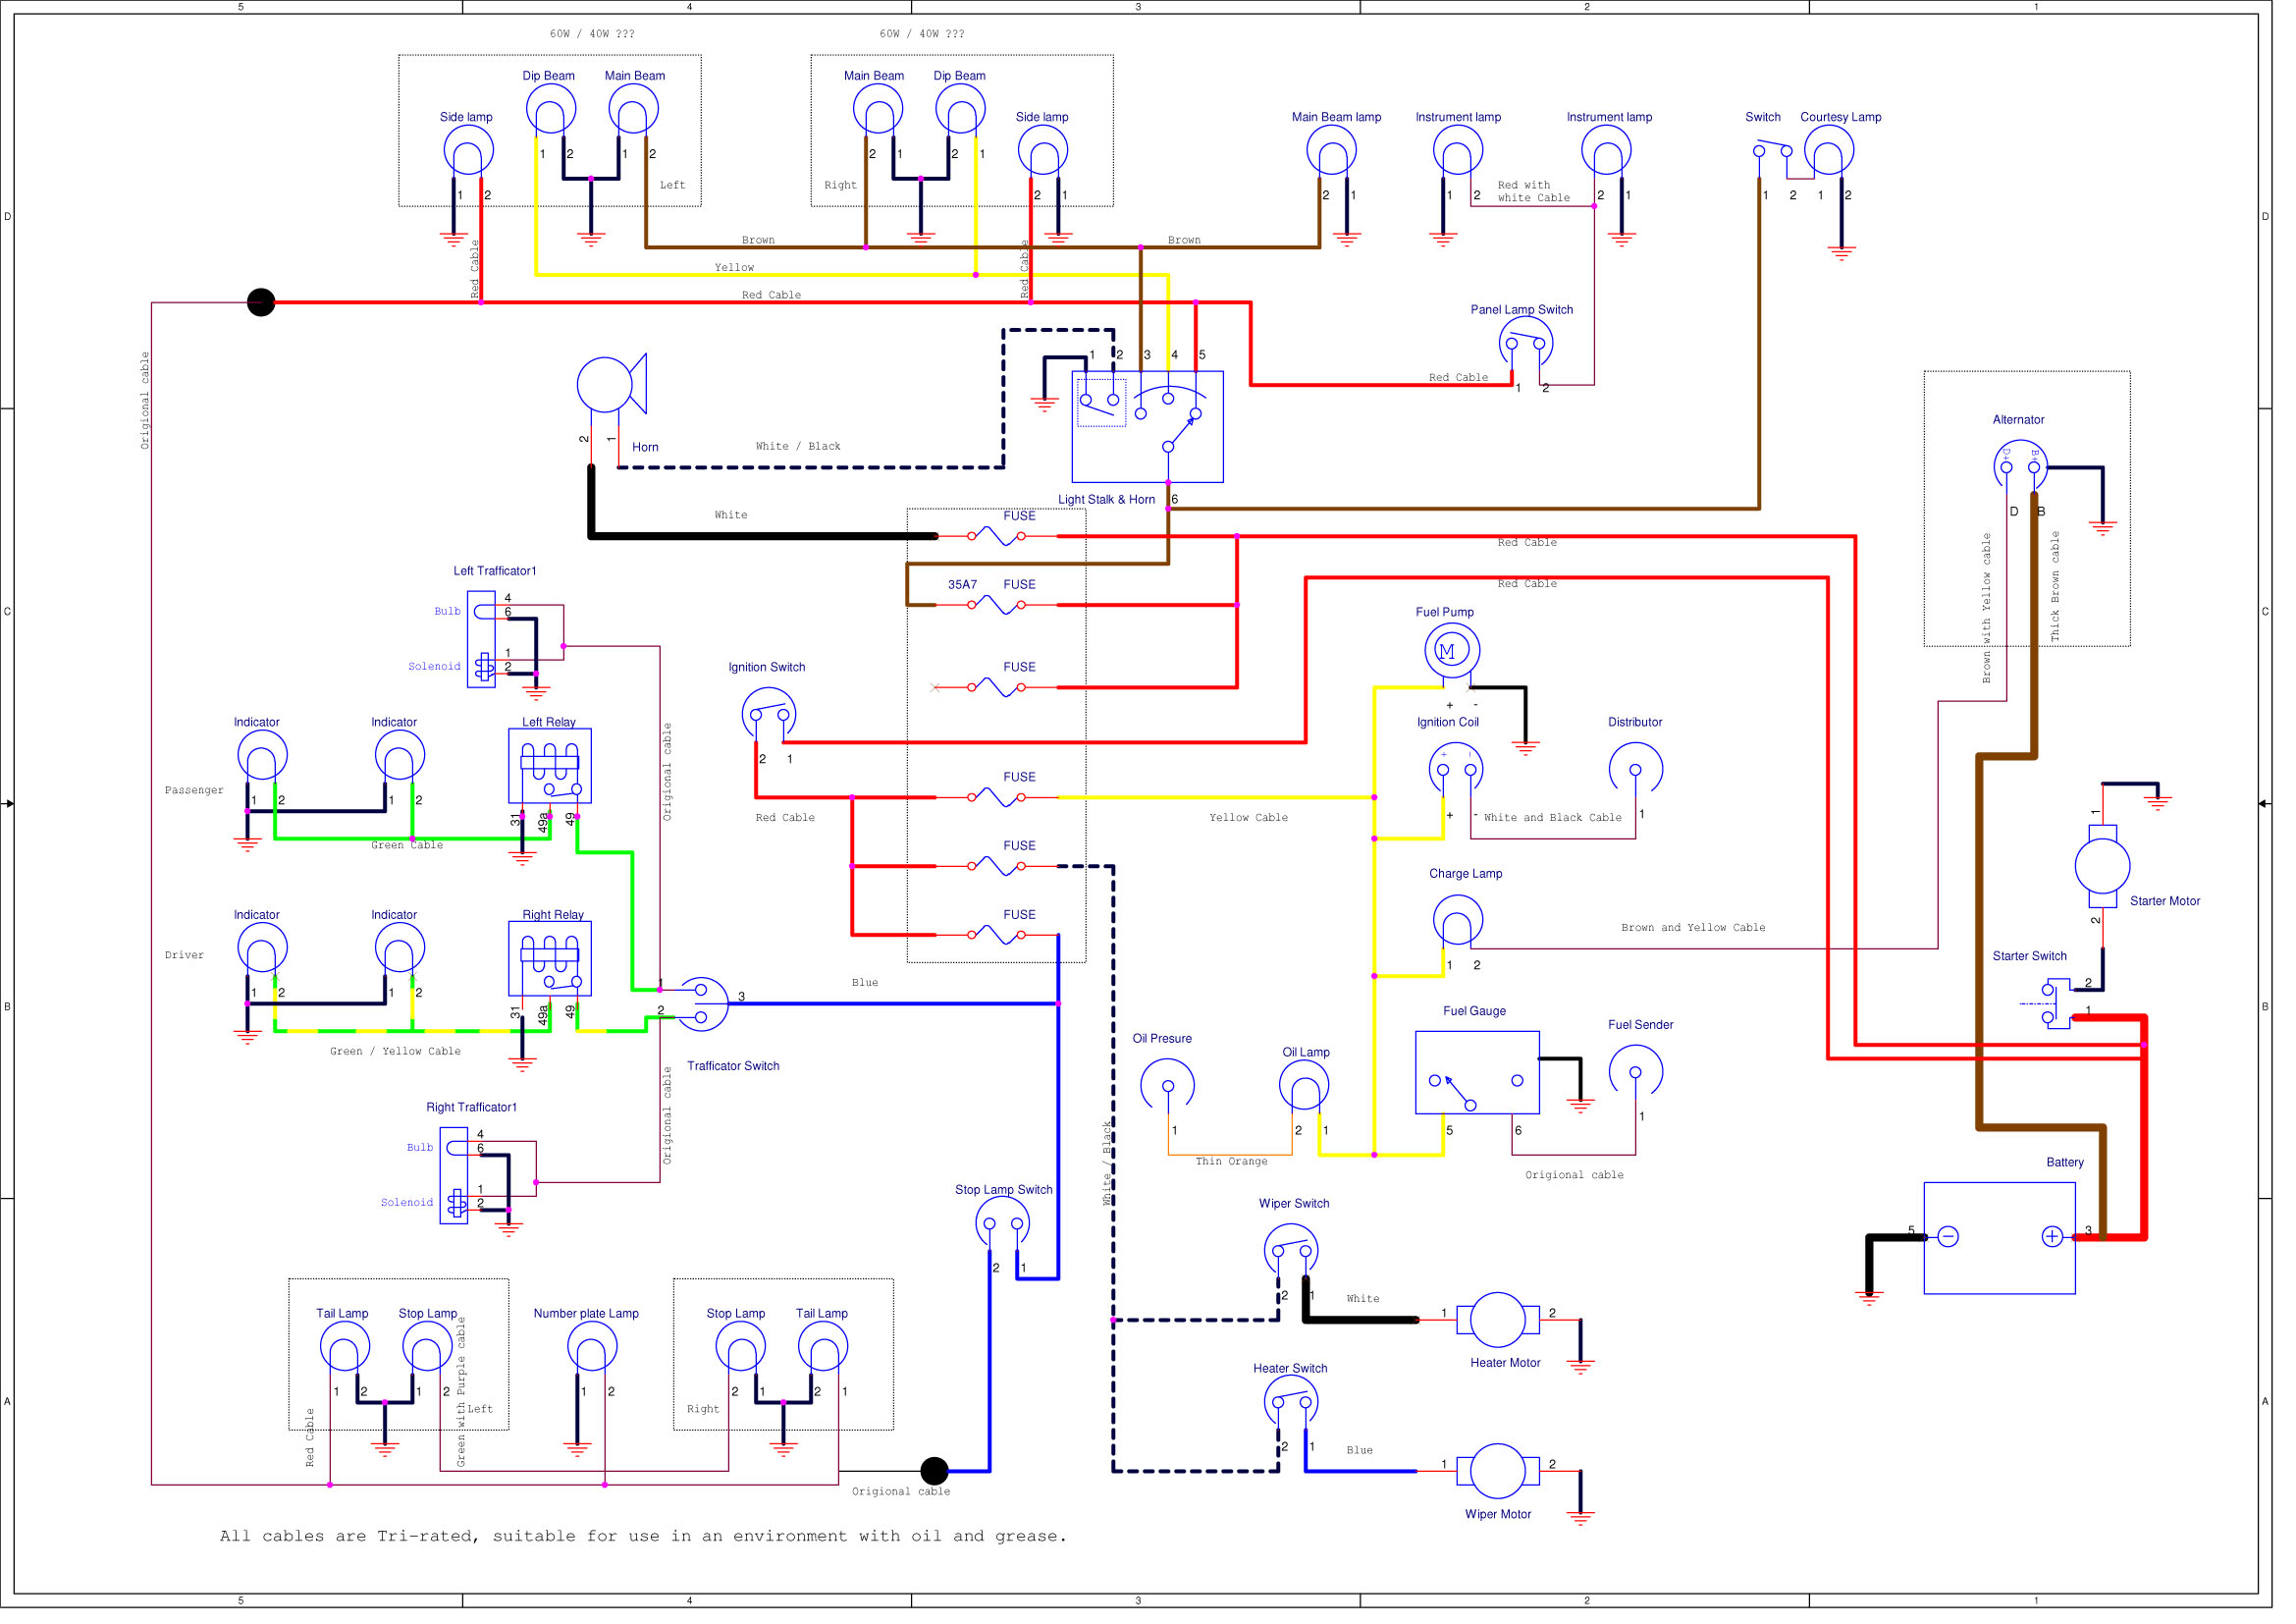 tomos a35 wiring diagram